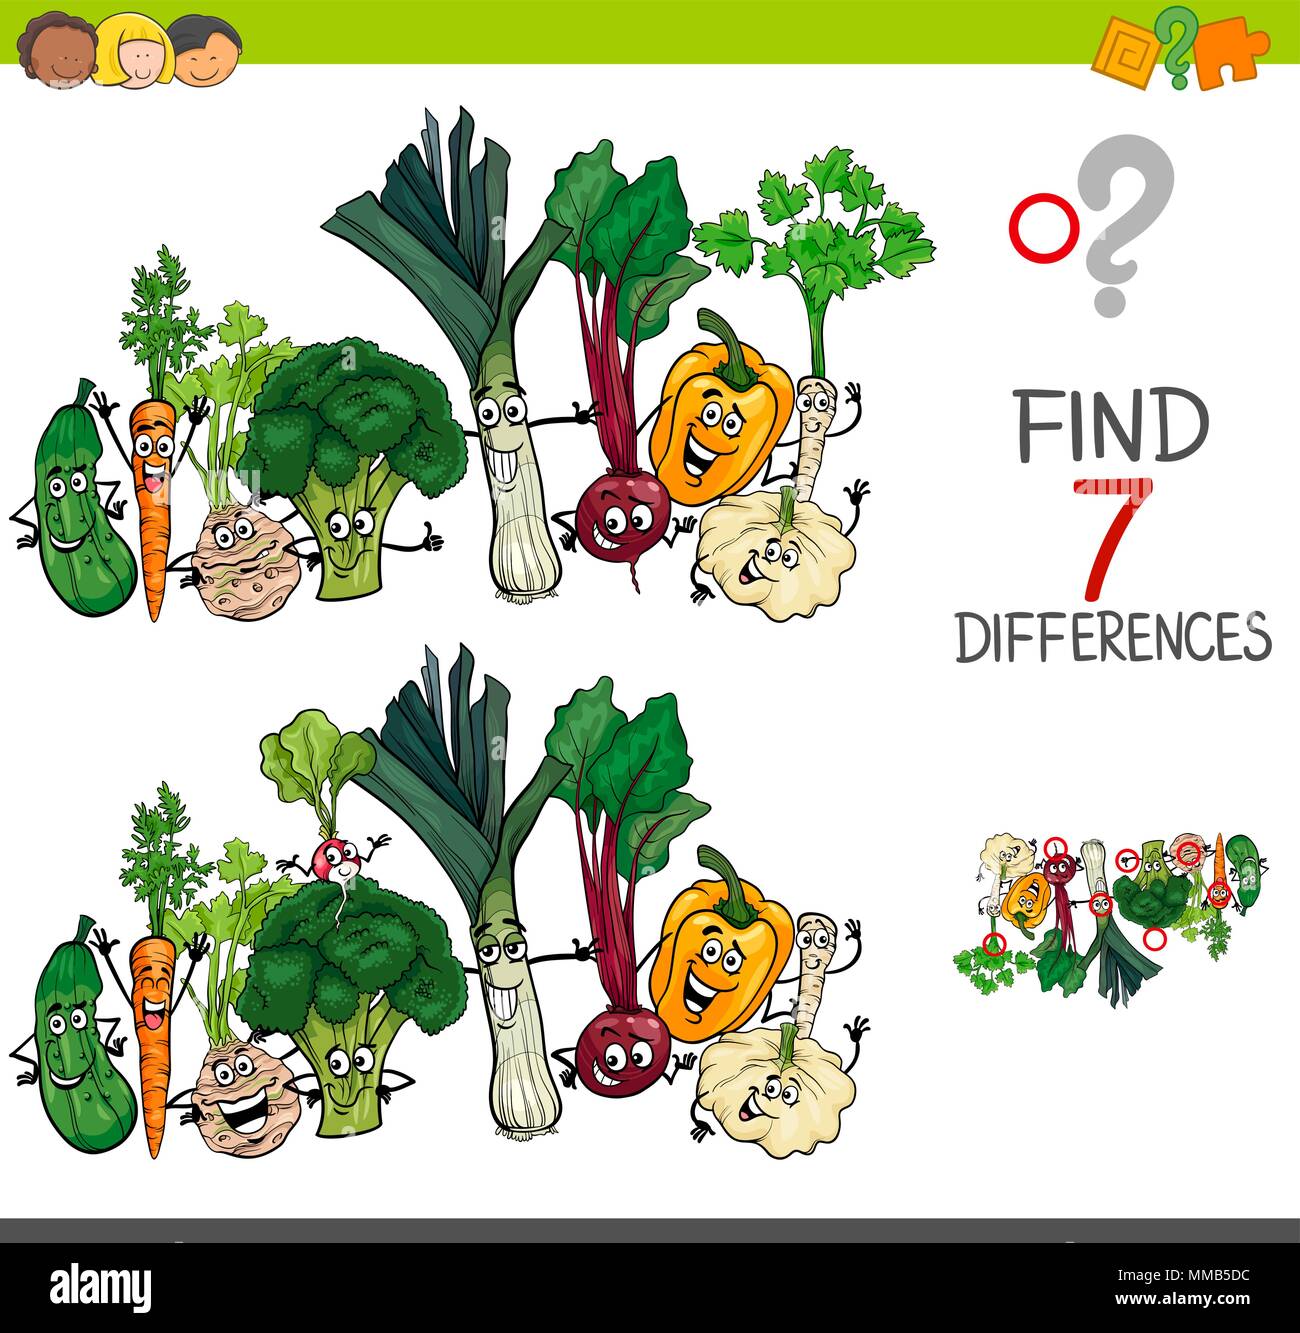 Cartoon Illustration des Findens Sieben Unterschiede zwischen Bilder pädagogische Tätigkeit Spiel für Kinder mit Gemüse essen Zeichen Gruppe Stock Vektor